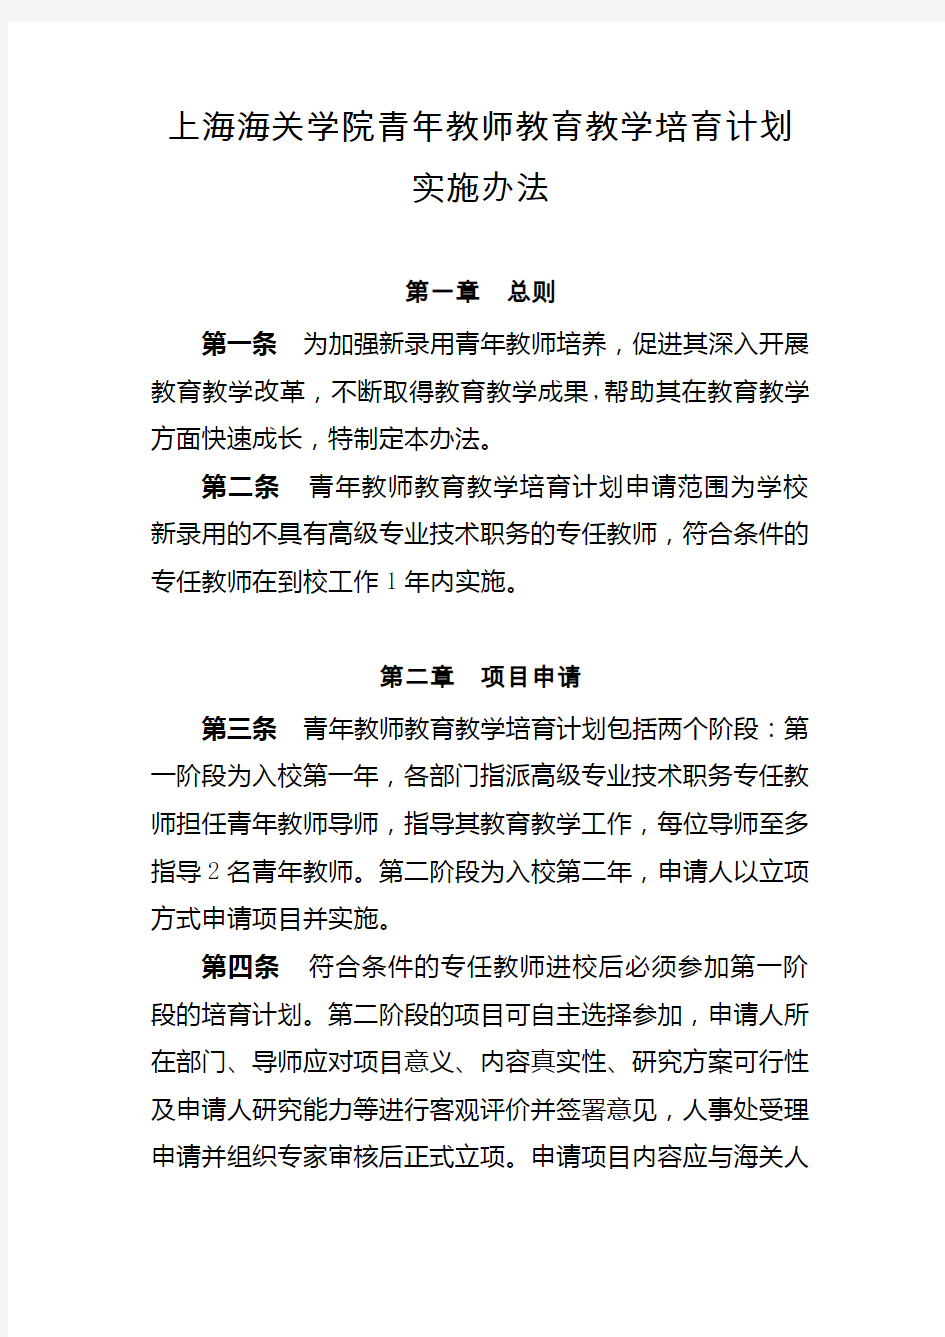 上海海关学院青年教师教育教学培育计划实施办法